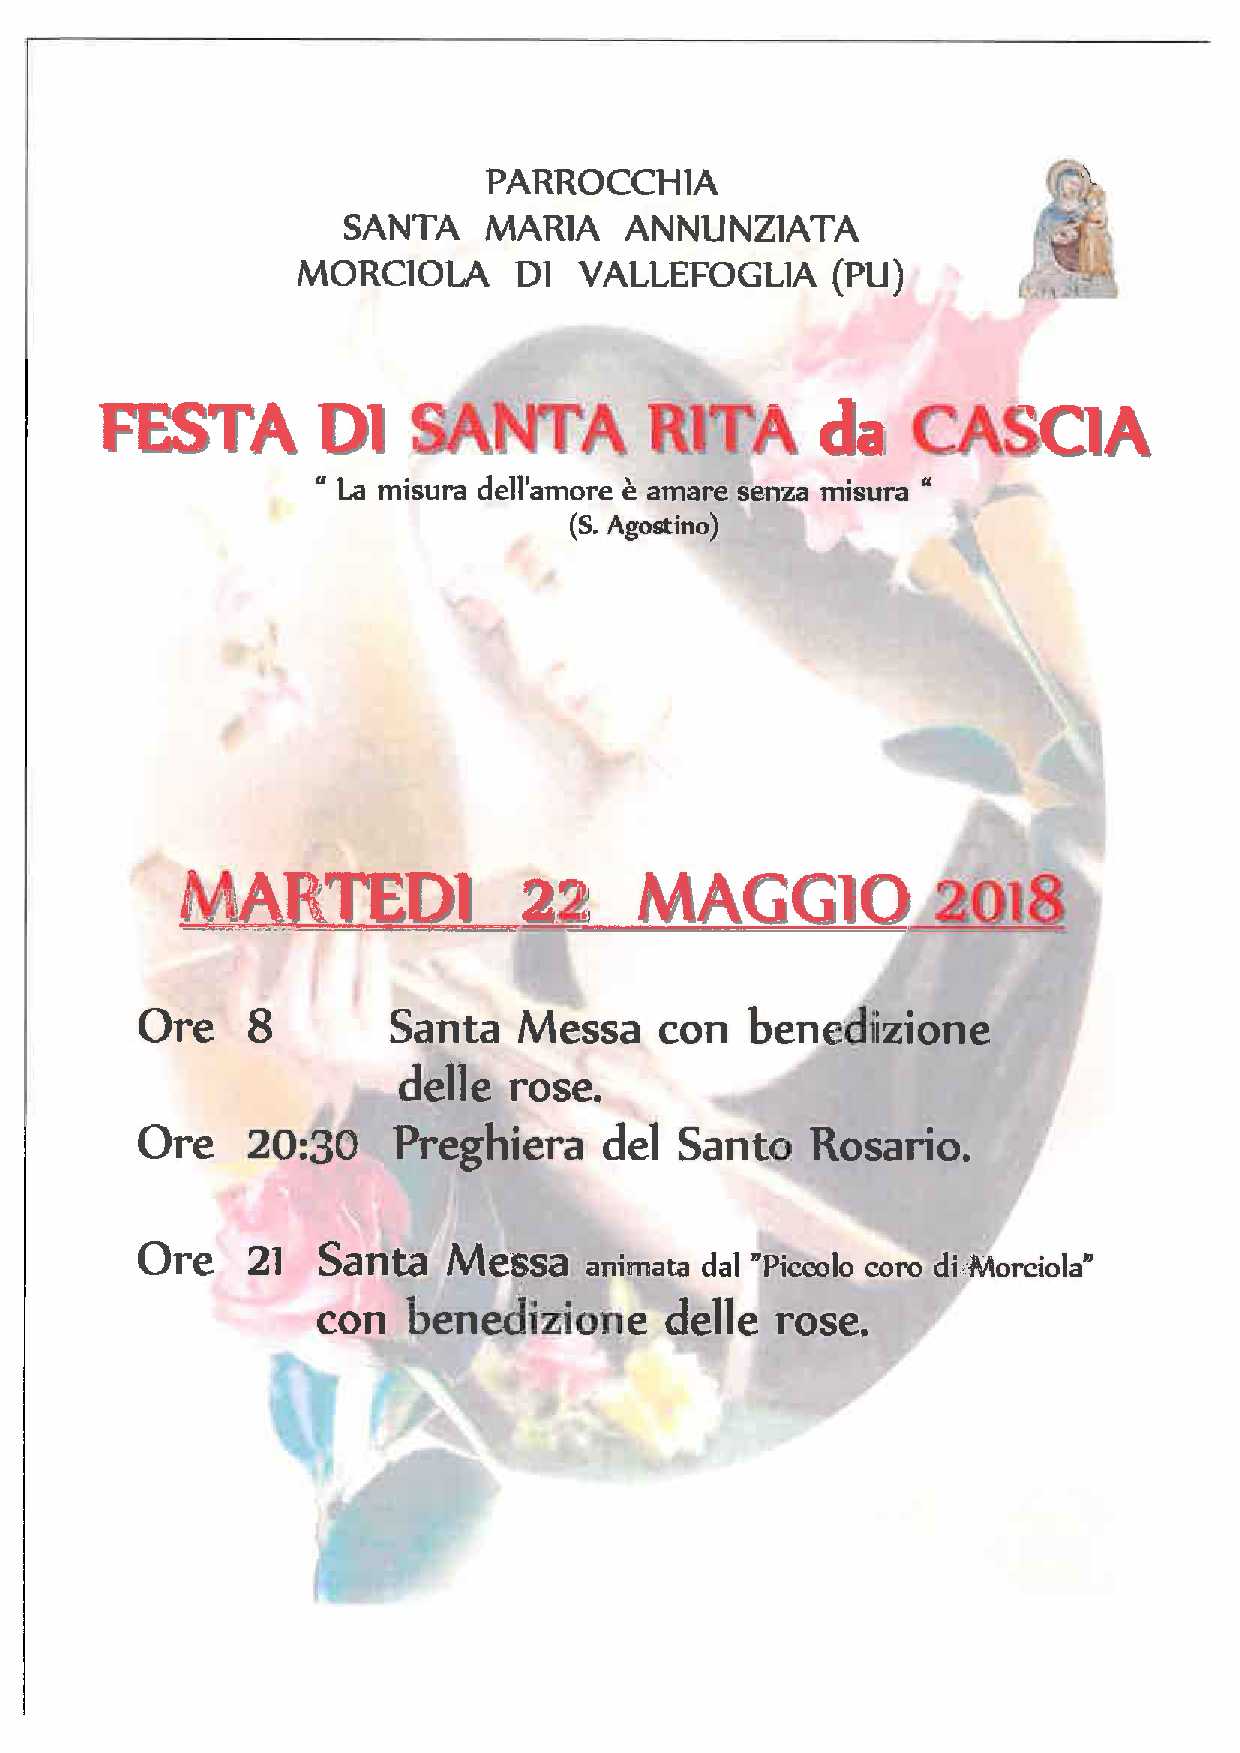 LOCANDINA FESTA S.RITA DA CASCIA 22 MAGGIO 2018